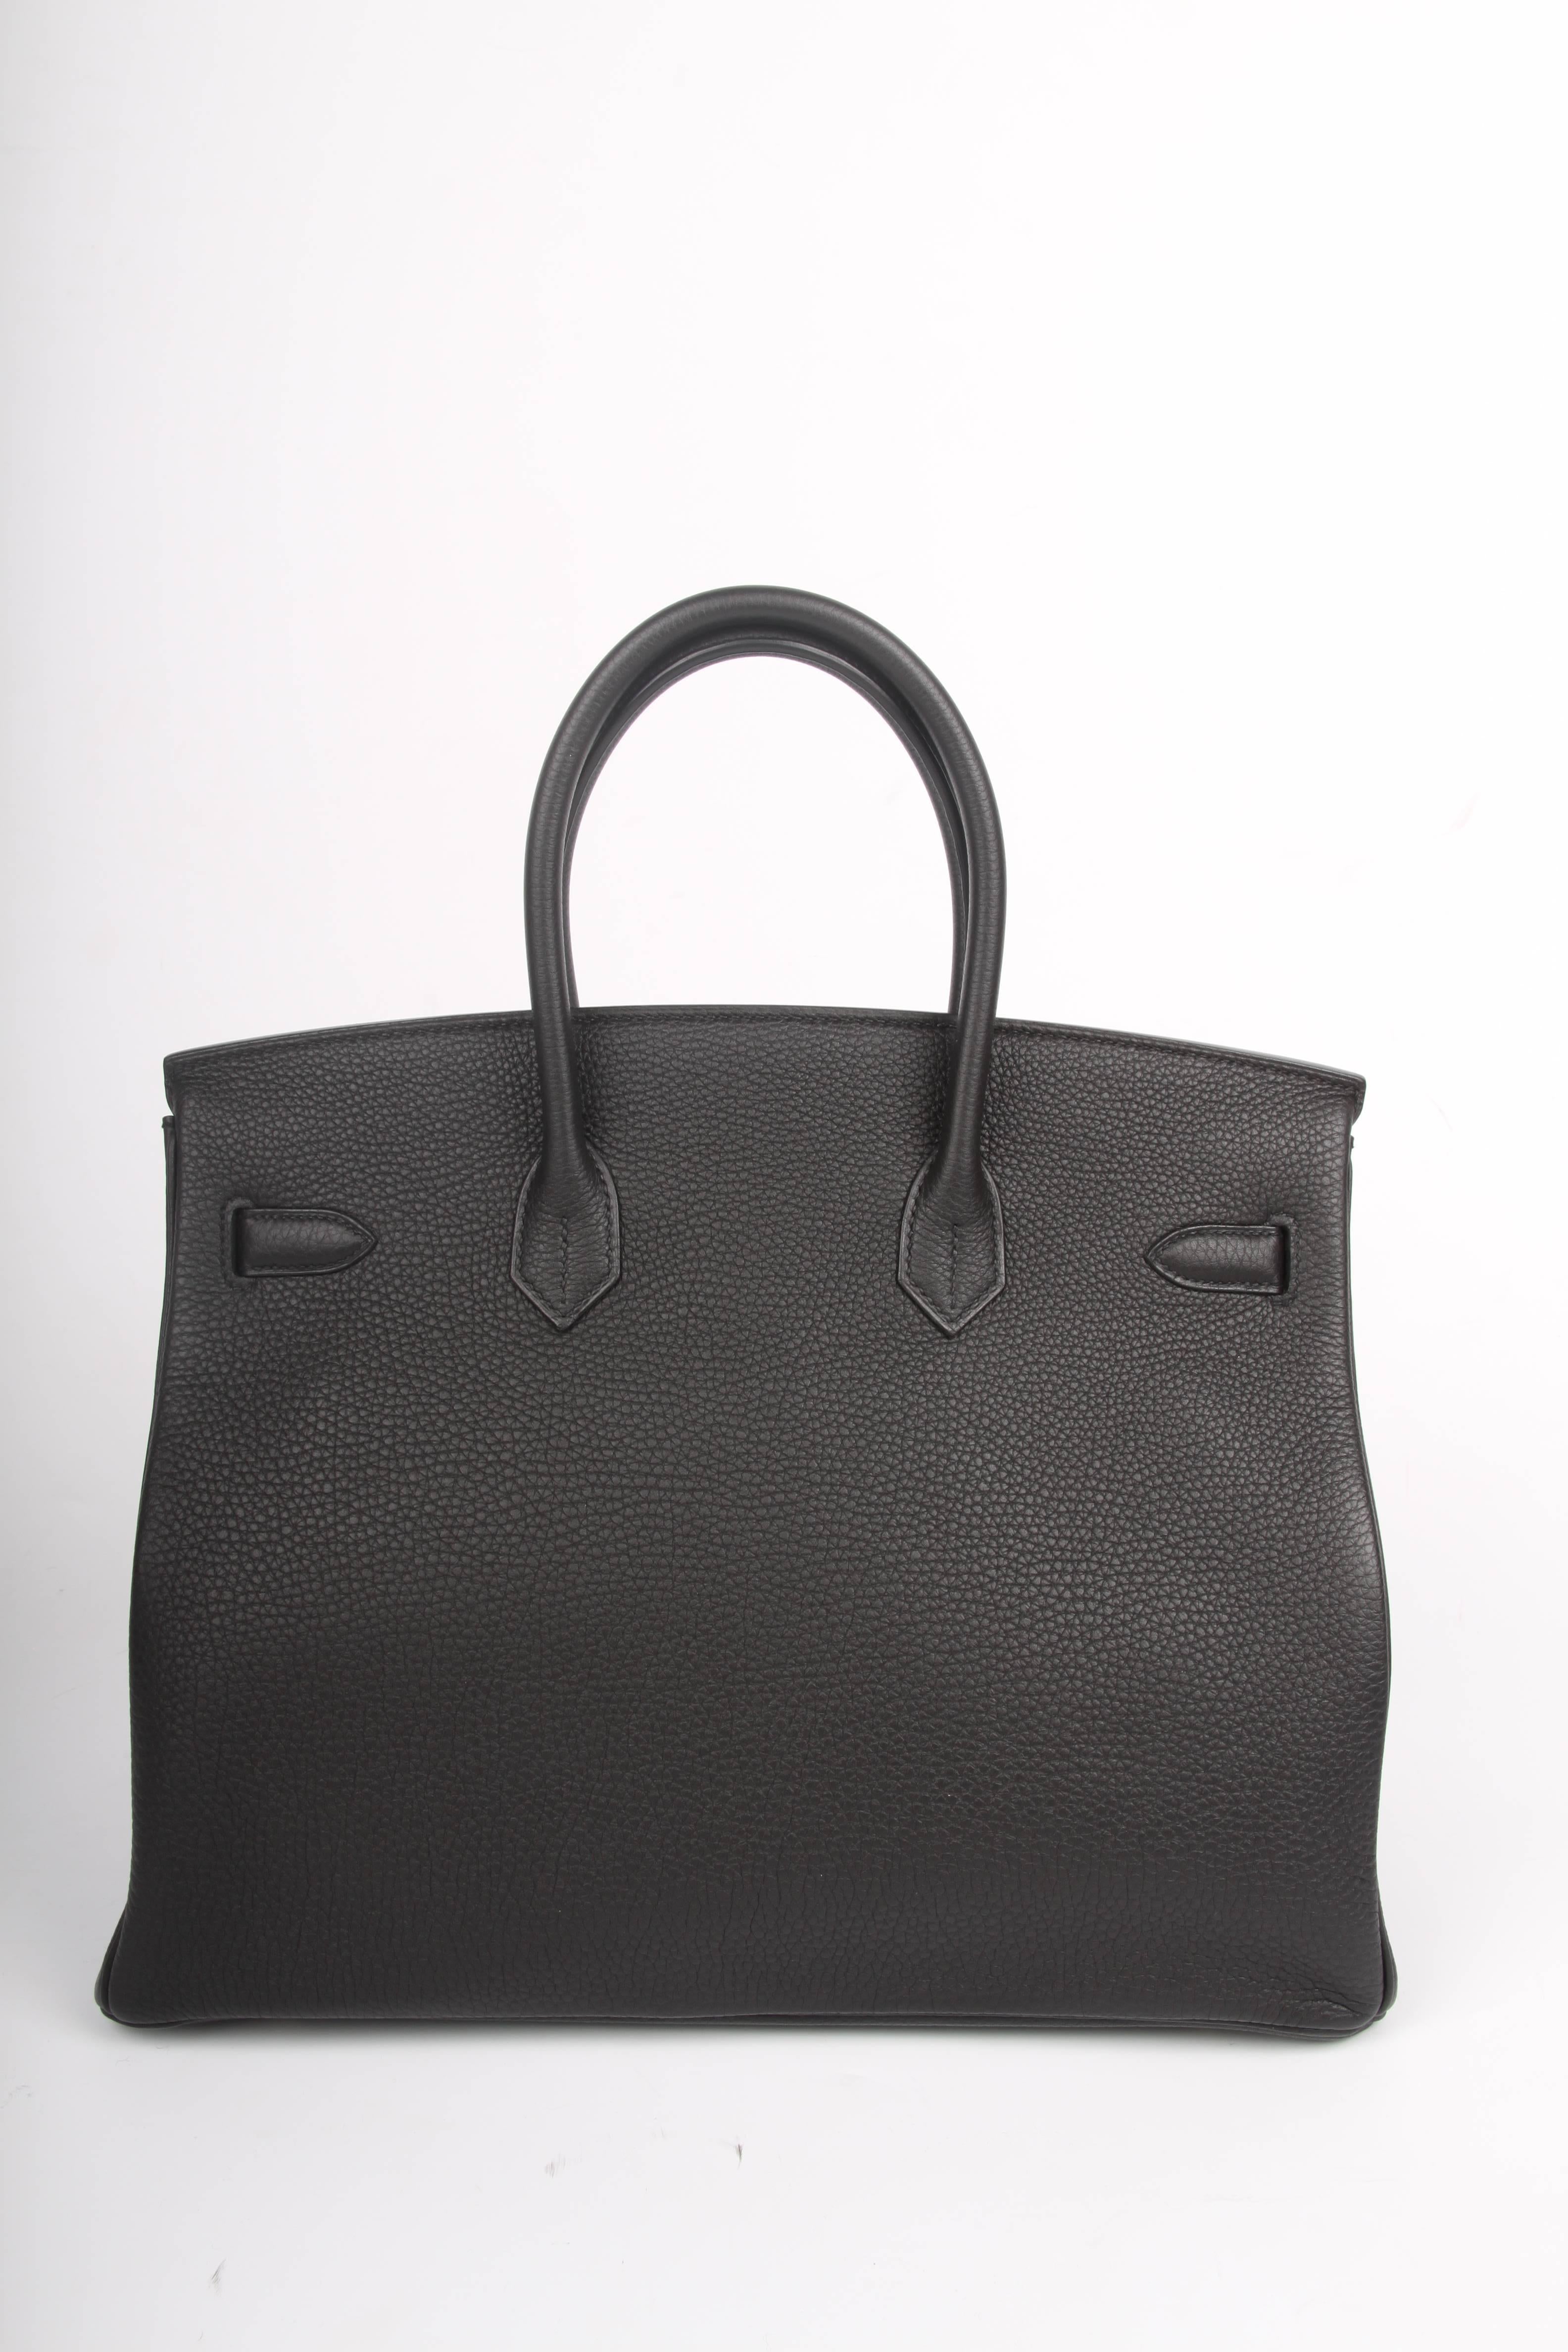   Hermes Birkin Bag 35 Togo Noir - goldtone hardware   1